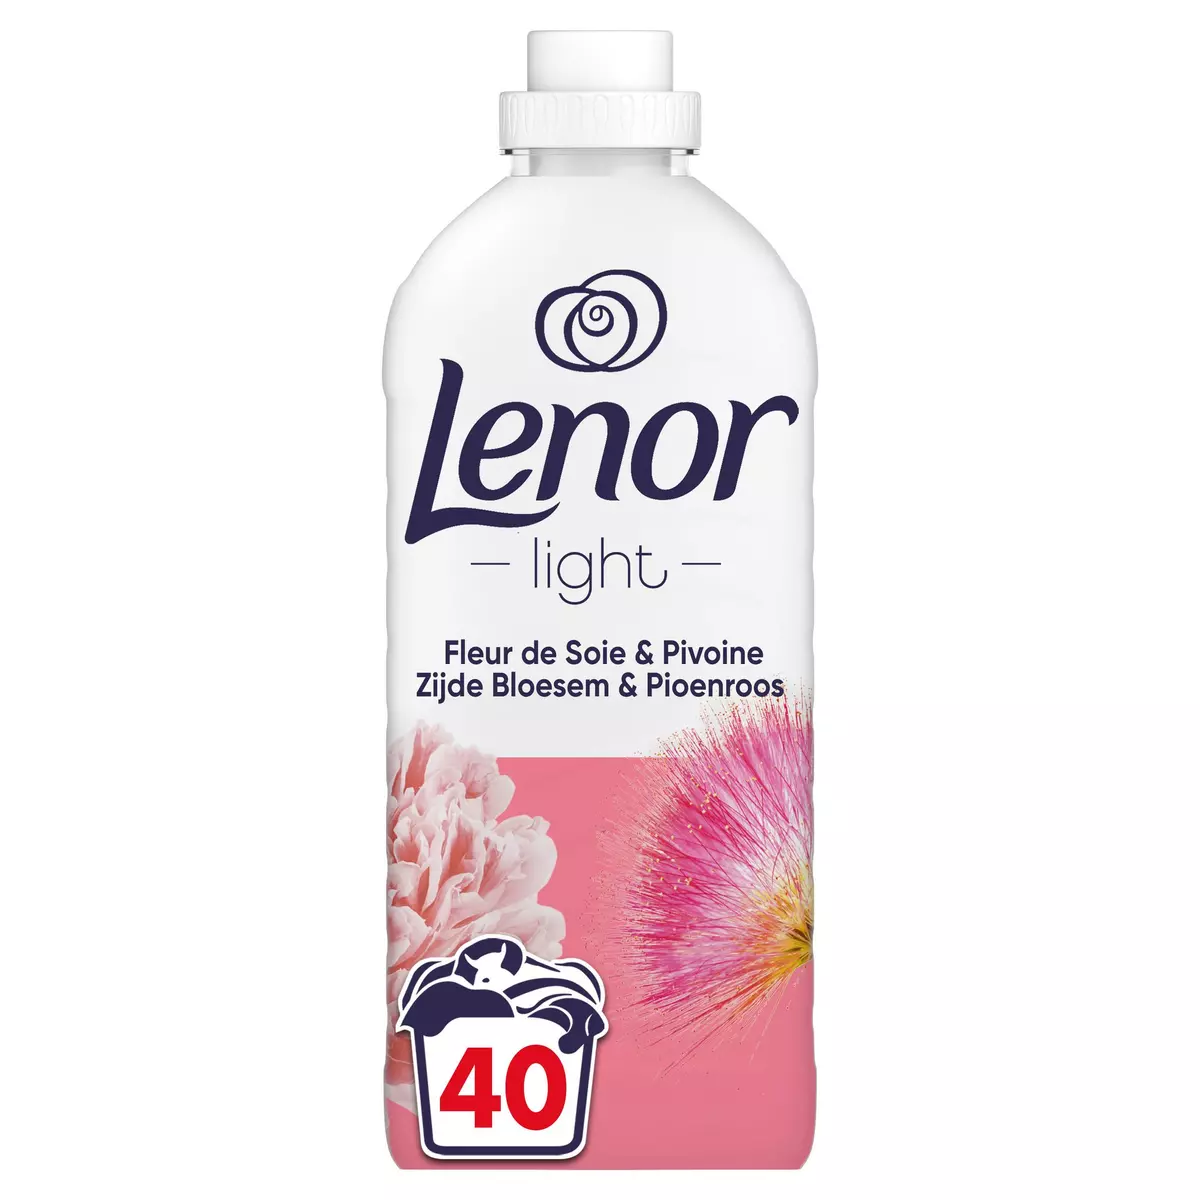 LENOR Light Adoucissant liquide fleur de soie et pivoine 40 lavages 840ml